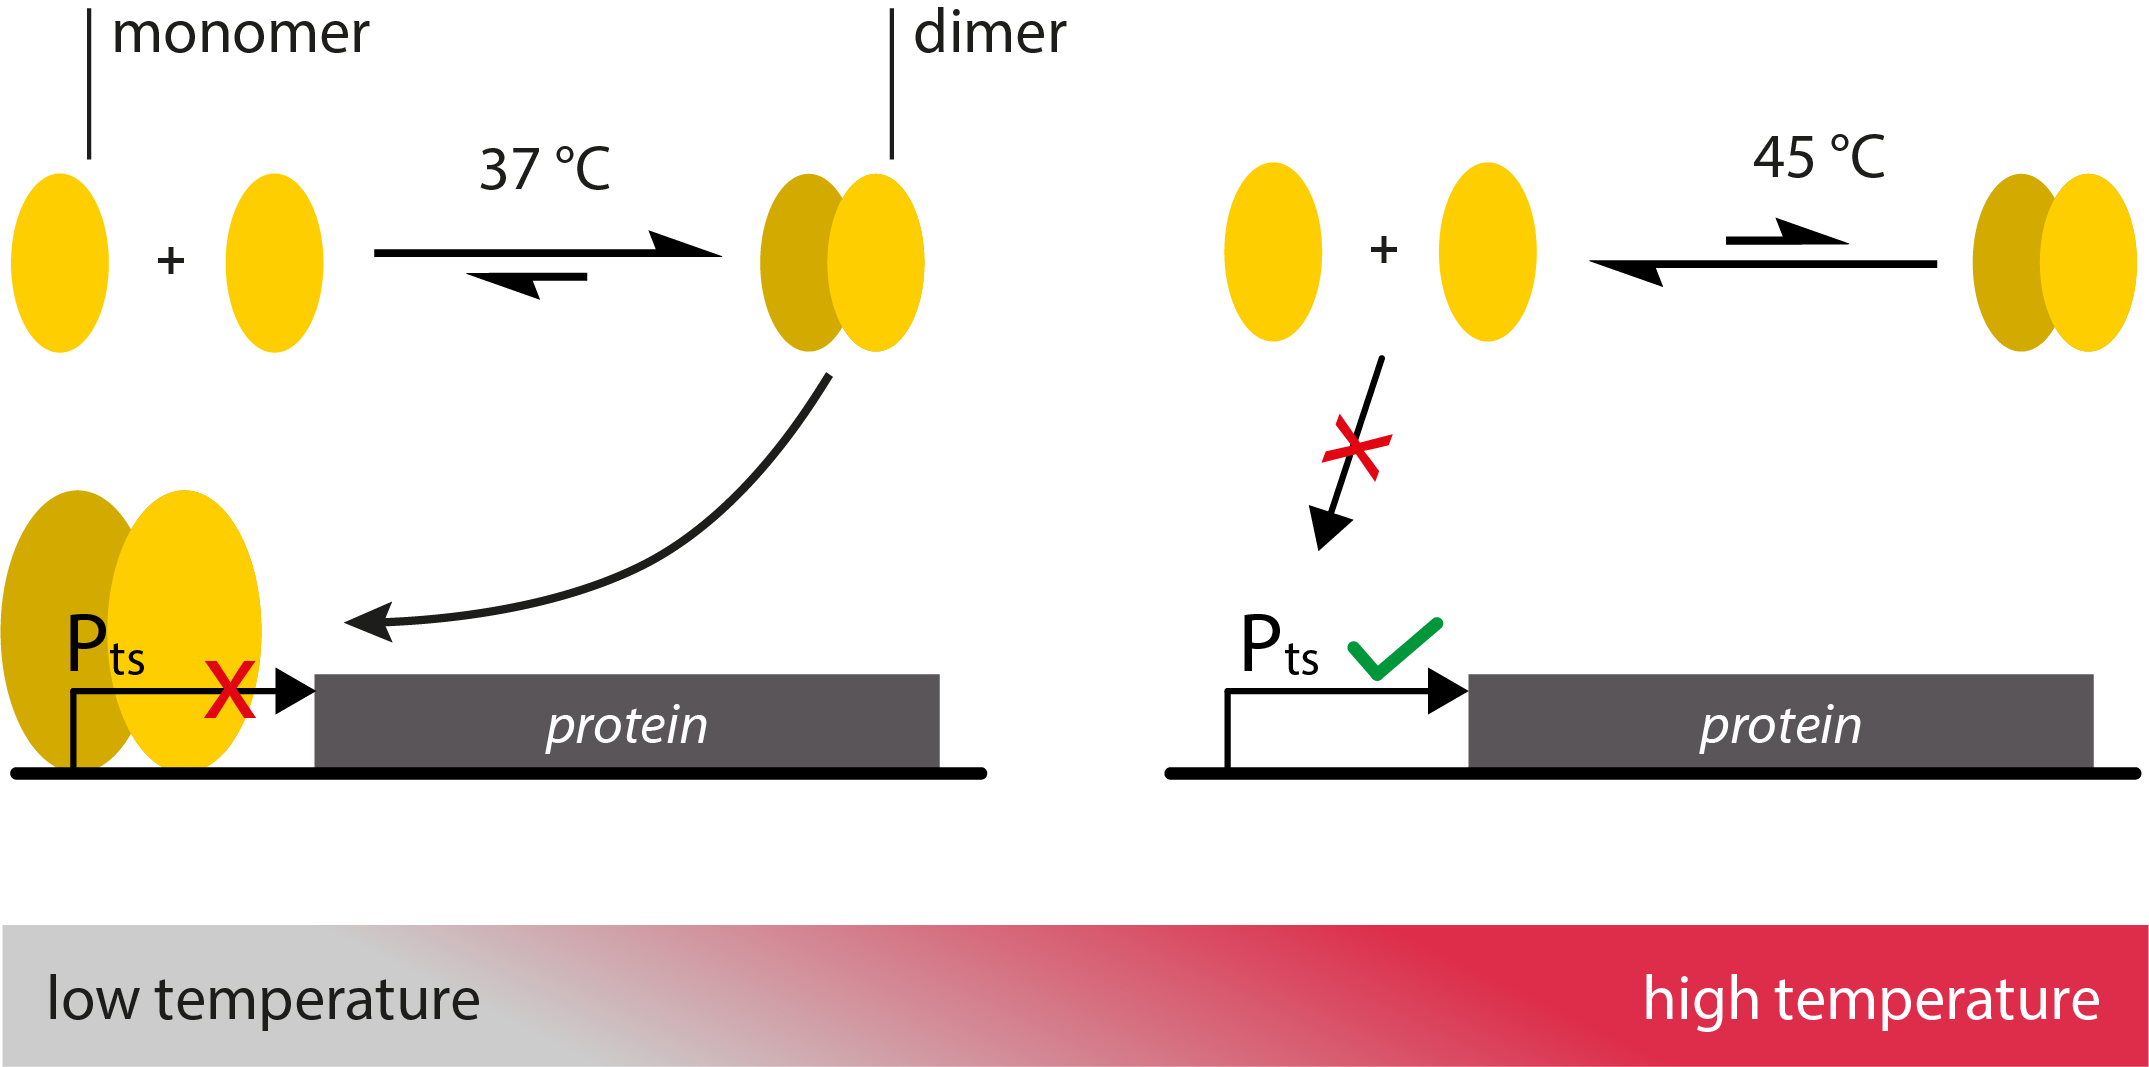 --ETH Zurich--Protein Heat Sensors.png